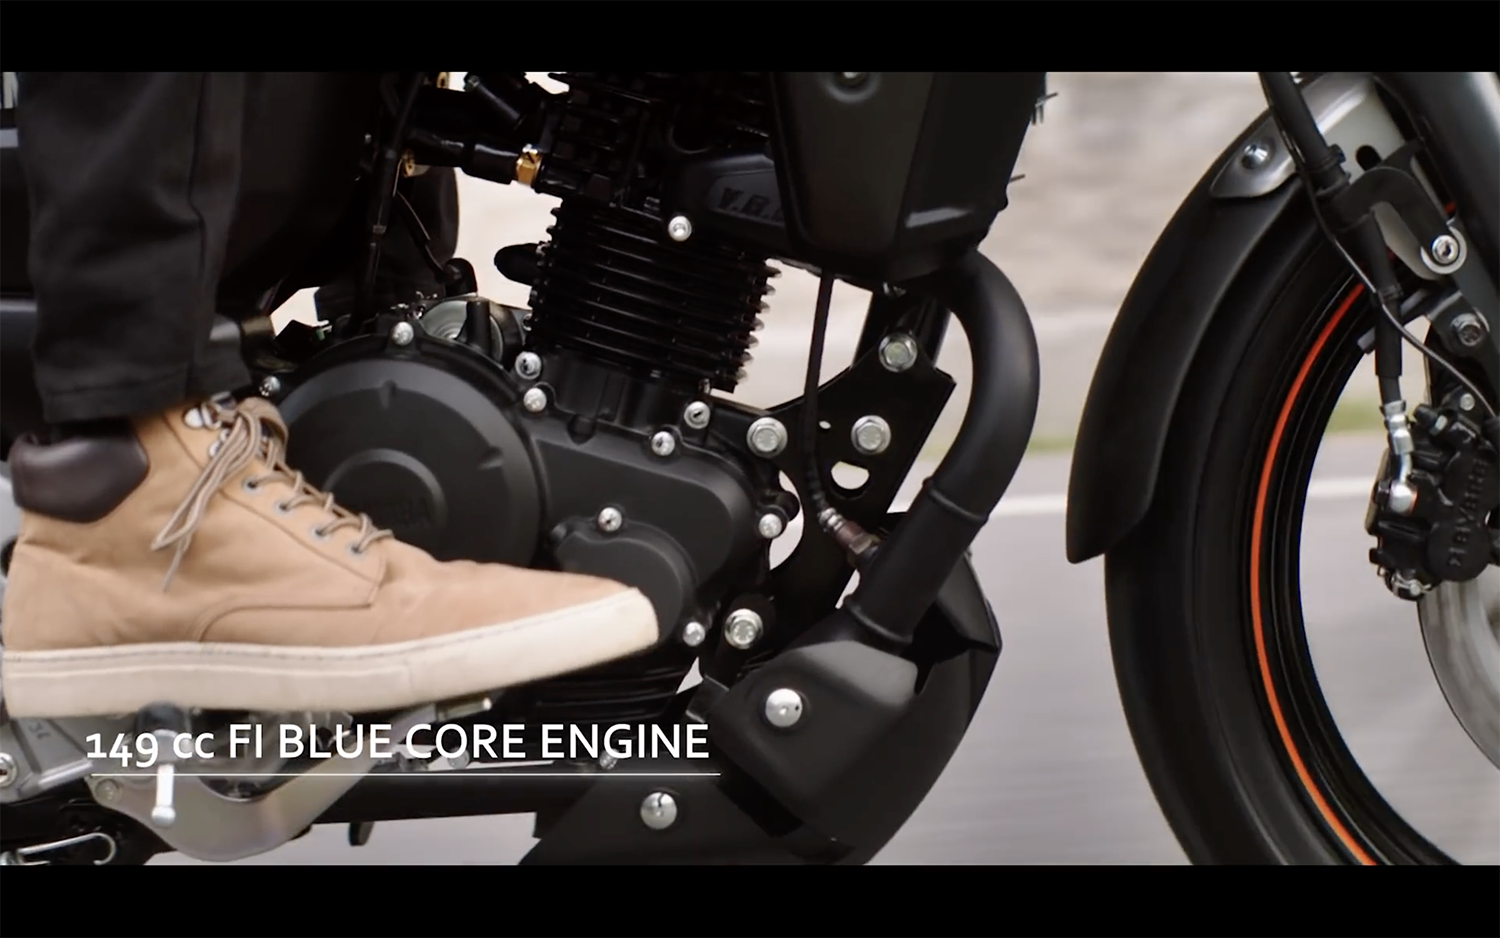 和FZ-S 150相同的BlueCore 149c.c.單缸引擎，有12.4PS的最大馬力